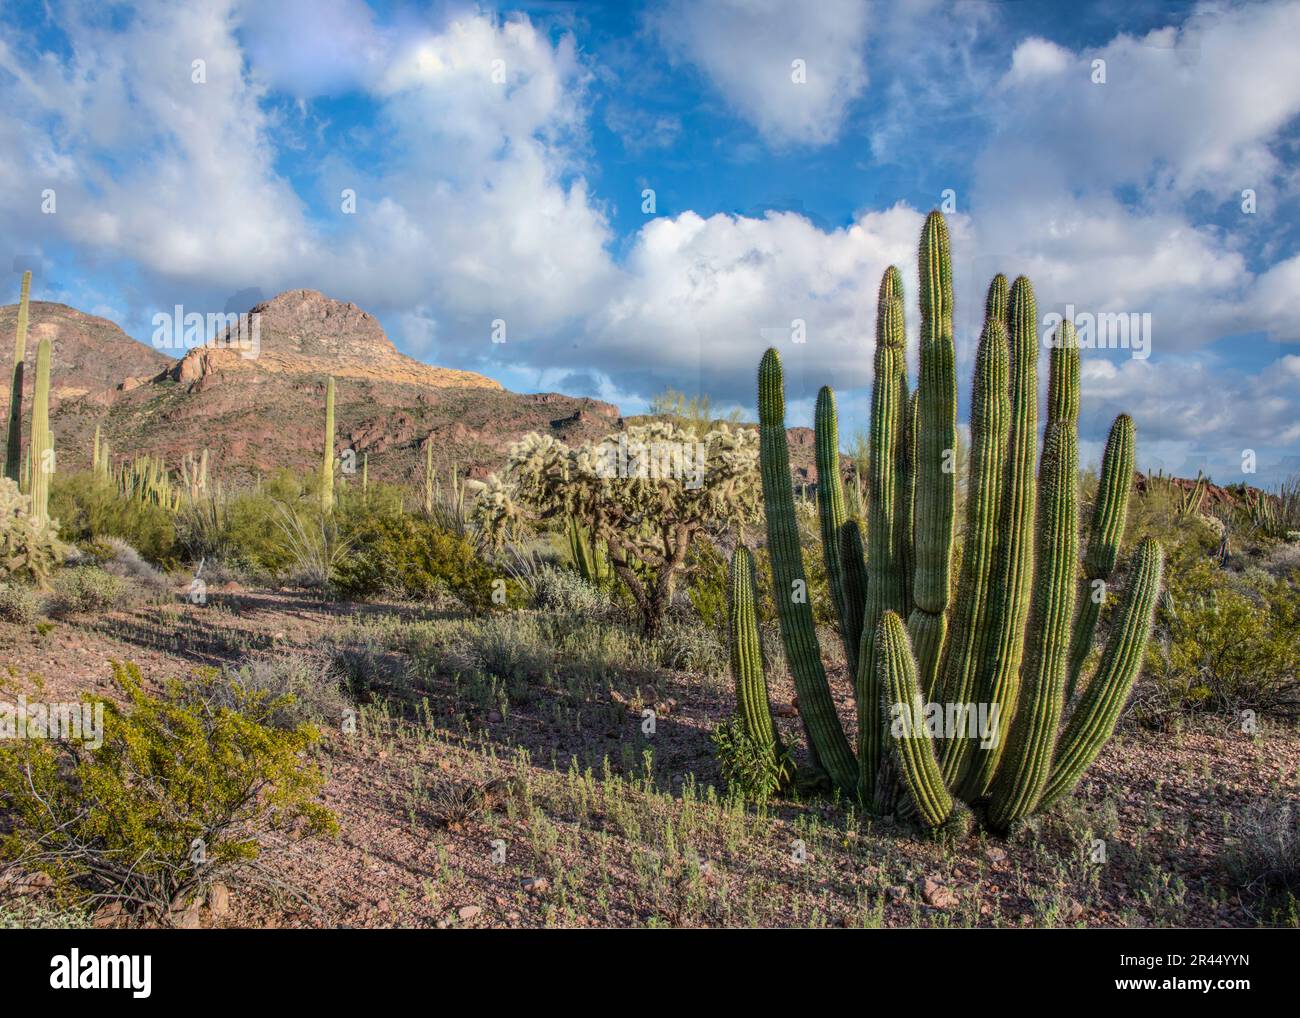 Paysage pittoresque mettant en valeur Organ Pipe Cactus, homonyme de Organ Pipe Cactus National Monument, Ajo, Lukeville, Arizona, Etats-Unis Banque D'Images